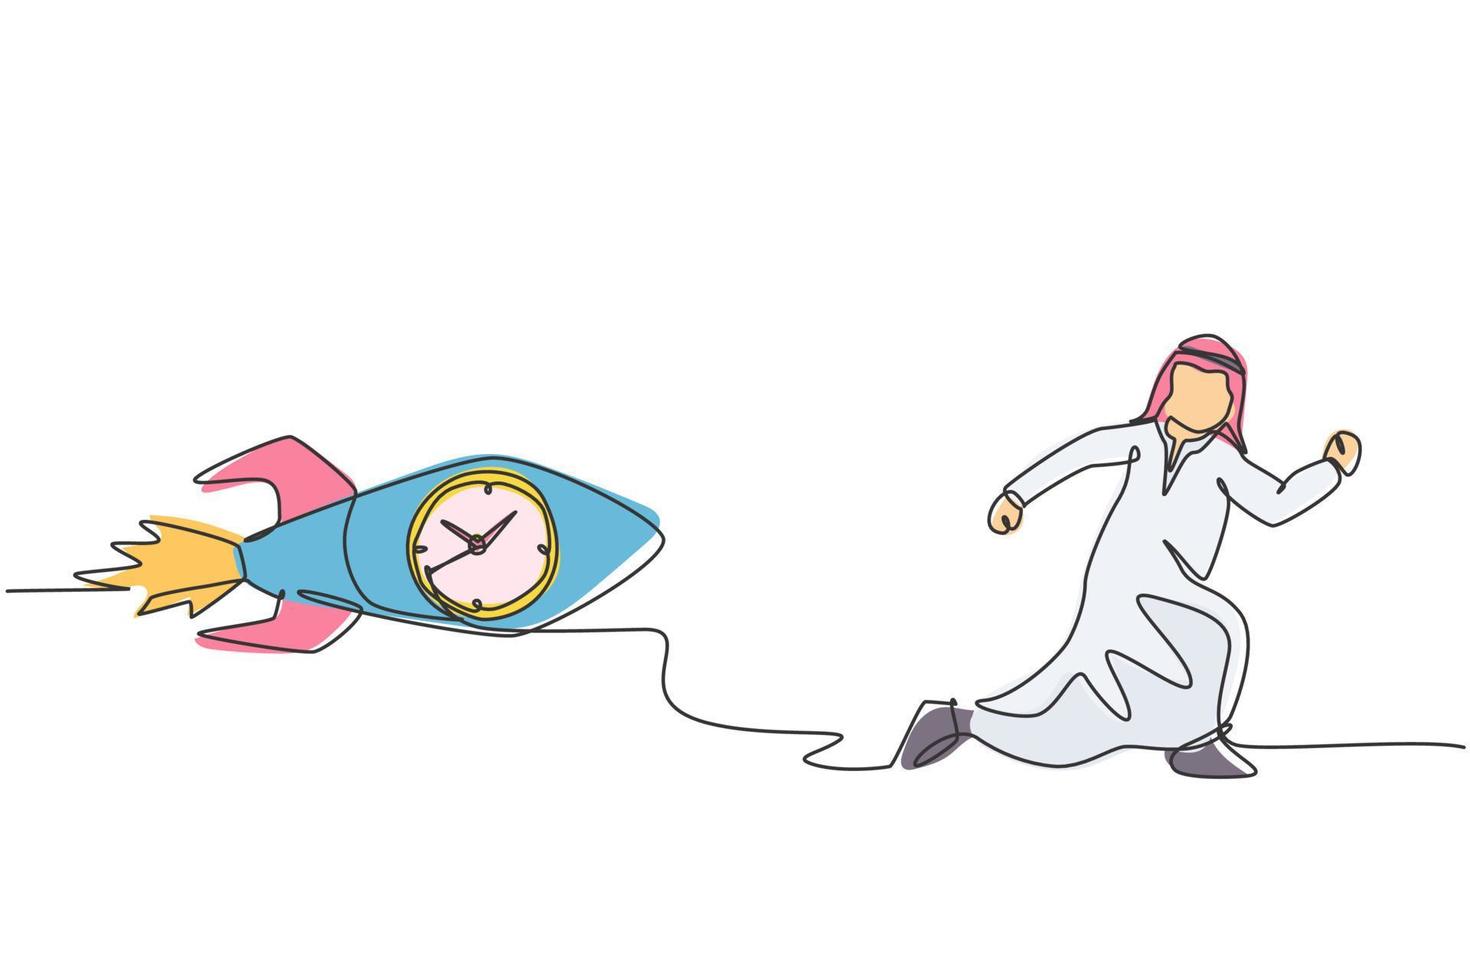 Kontinuierliche einzeilige Zeichnung junger arabischer männlicher Arbeiter, der von einer fliegenden Rakete mit Uhr im Inneren verfolgt wird. Rush Hour Management minimalistisches Geschäftskonzept. einzelne Linie zeichnen Design-Vektor-Grafik-Darstellung. vektor